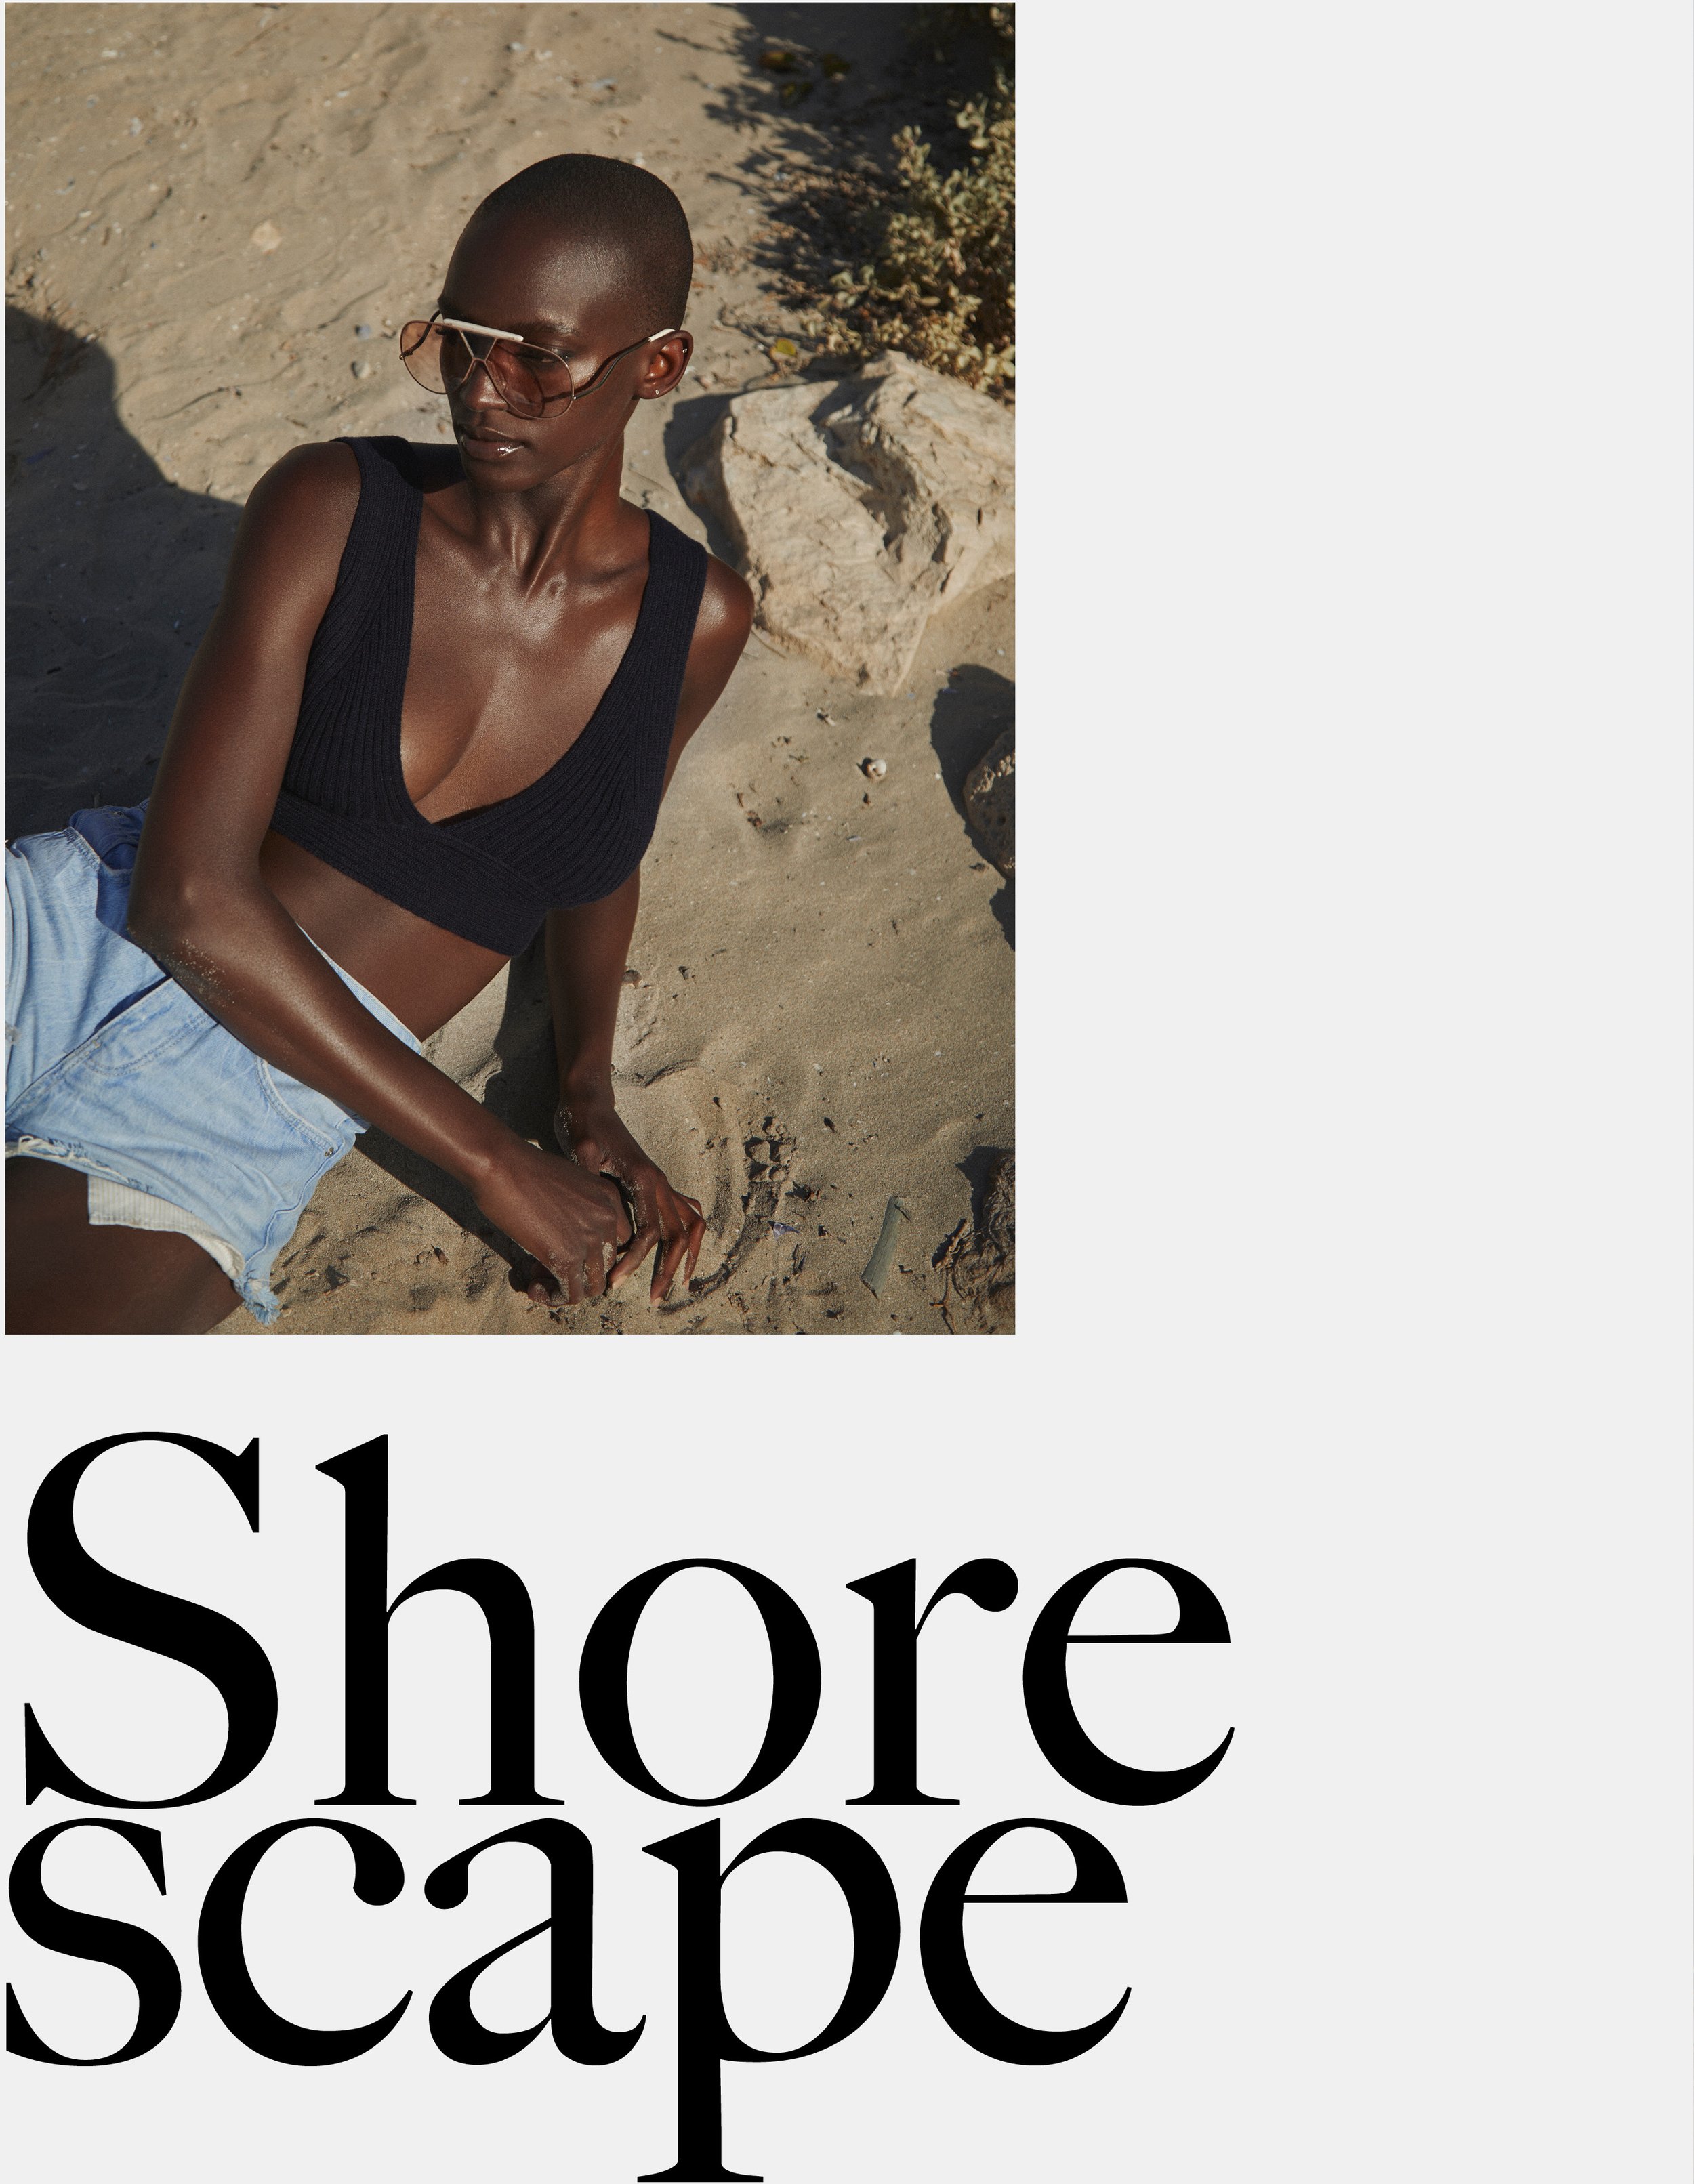 Shorescape-vestal magazine 2.jpg